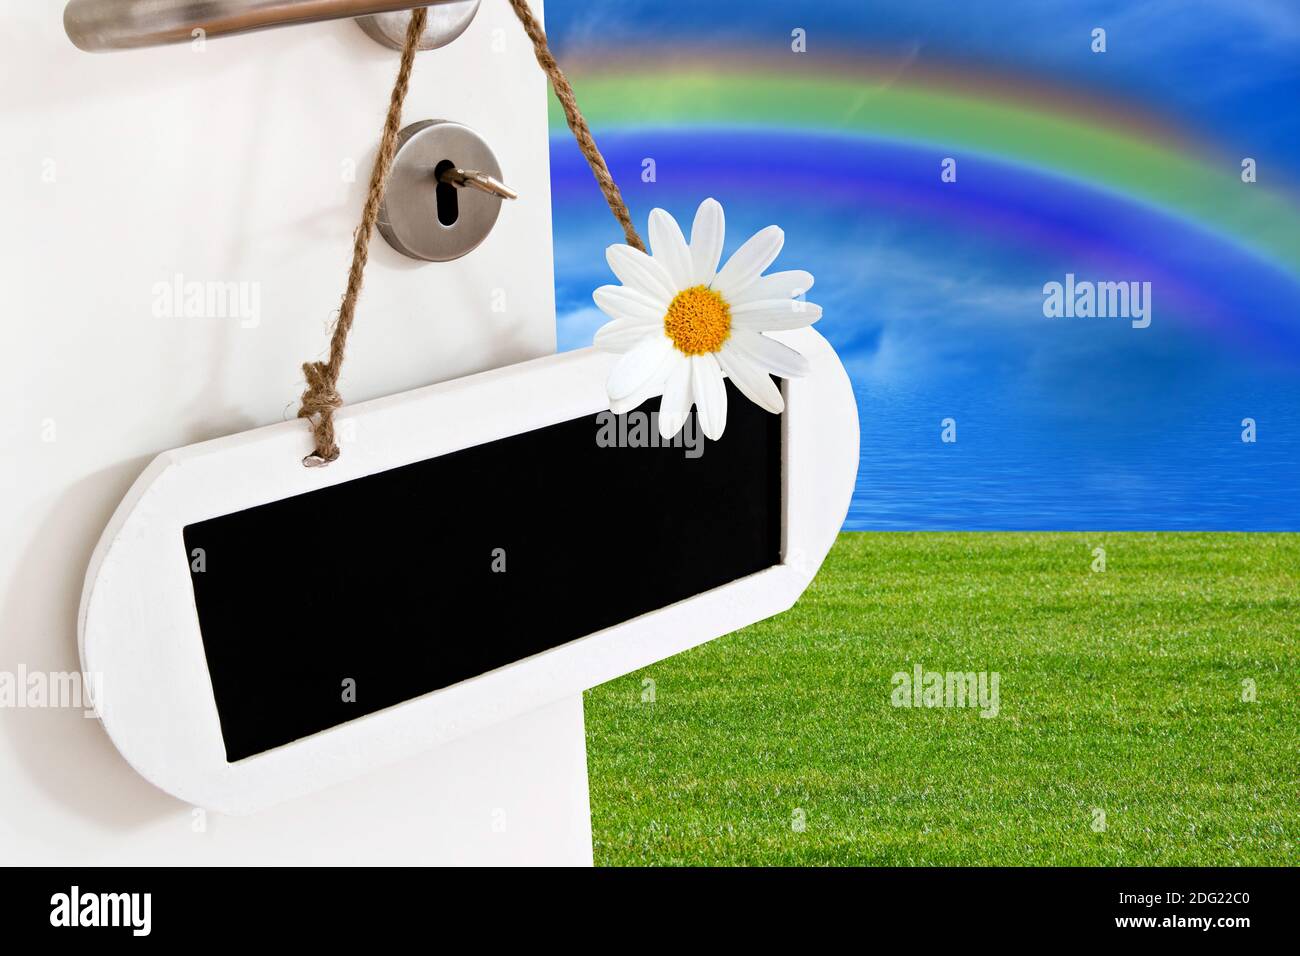 Offene Tür mit Kreidetafel , Himmel, Rasen und Regenbogen Stock Photo